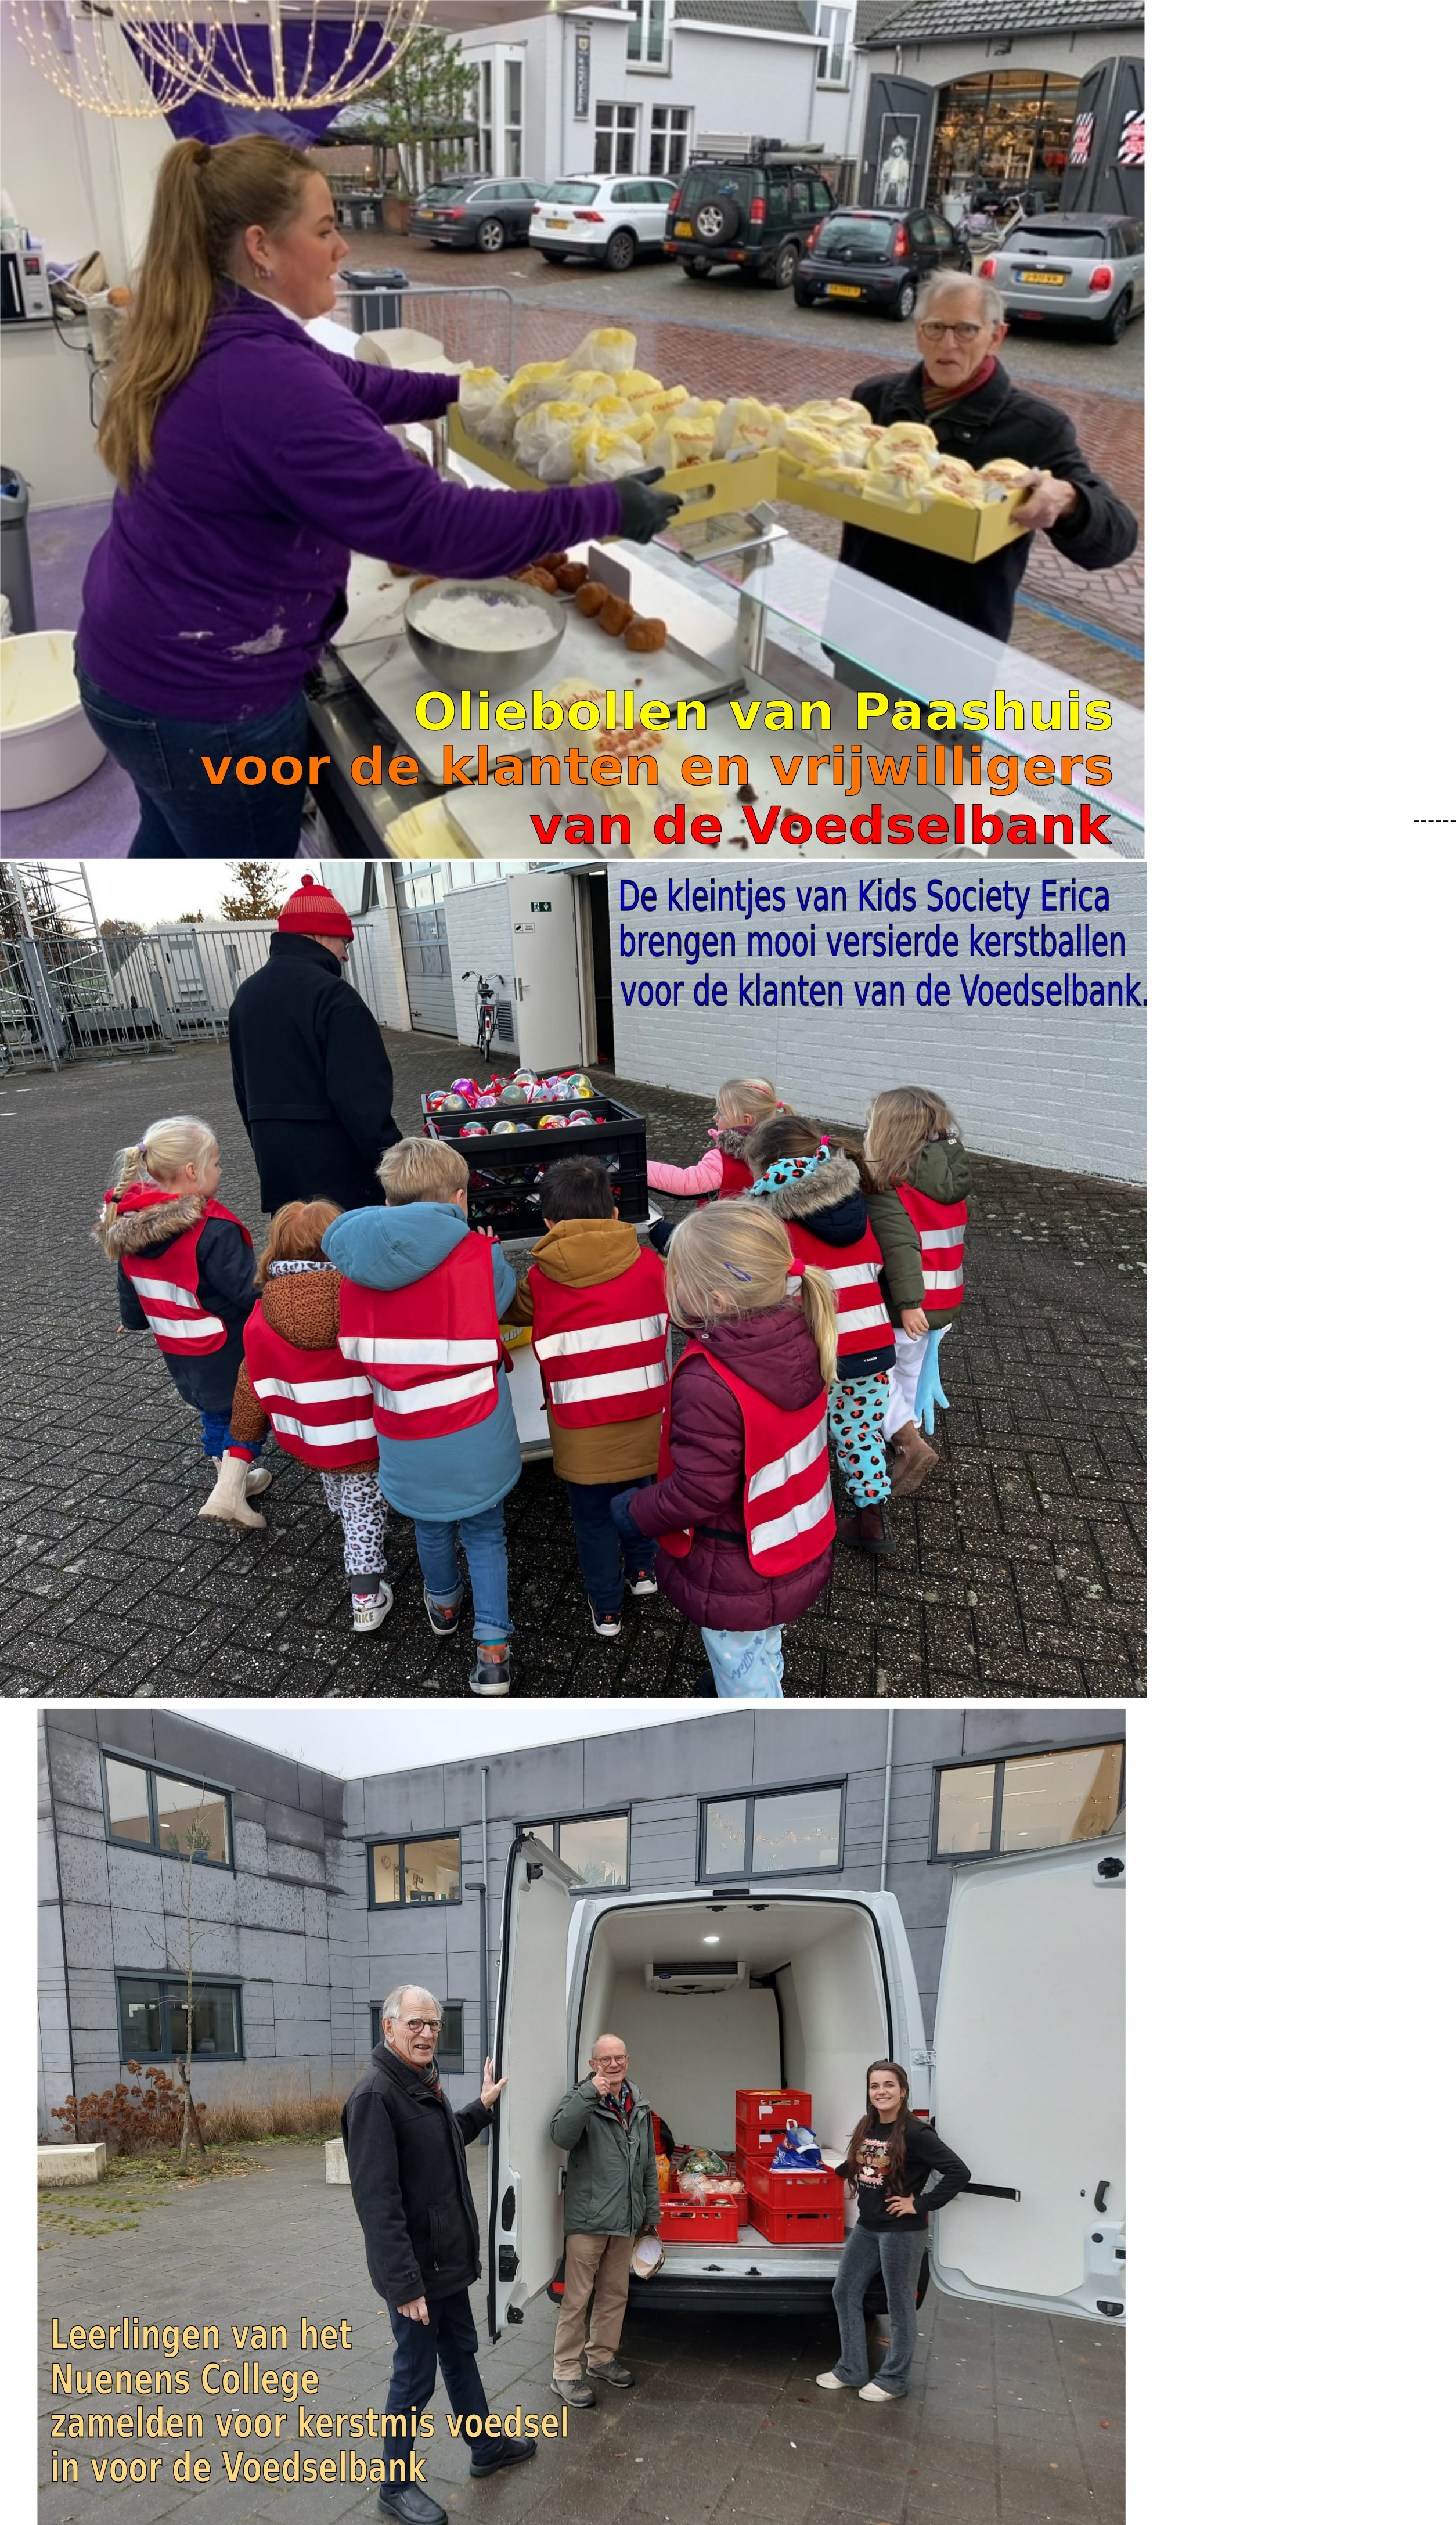 Oliebollen voor vrijwilligers, Nuenen College en Kids Society Erica in de weer voor de Voedselbank